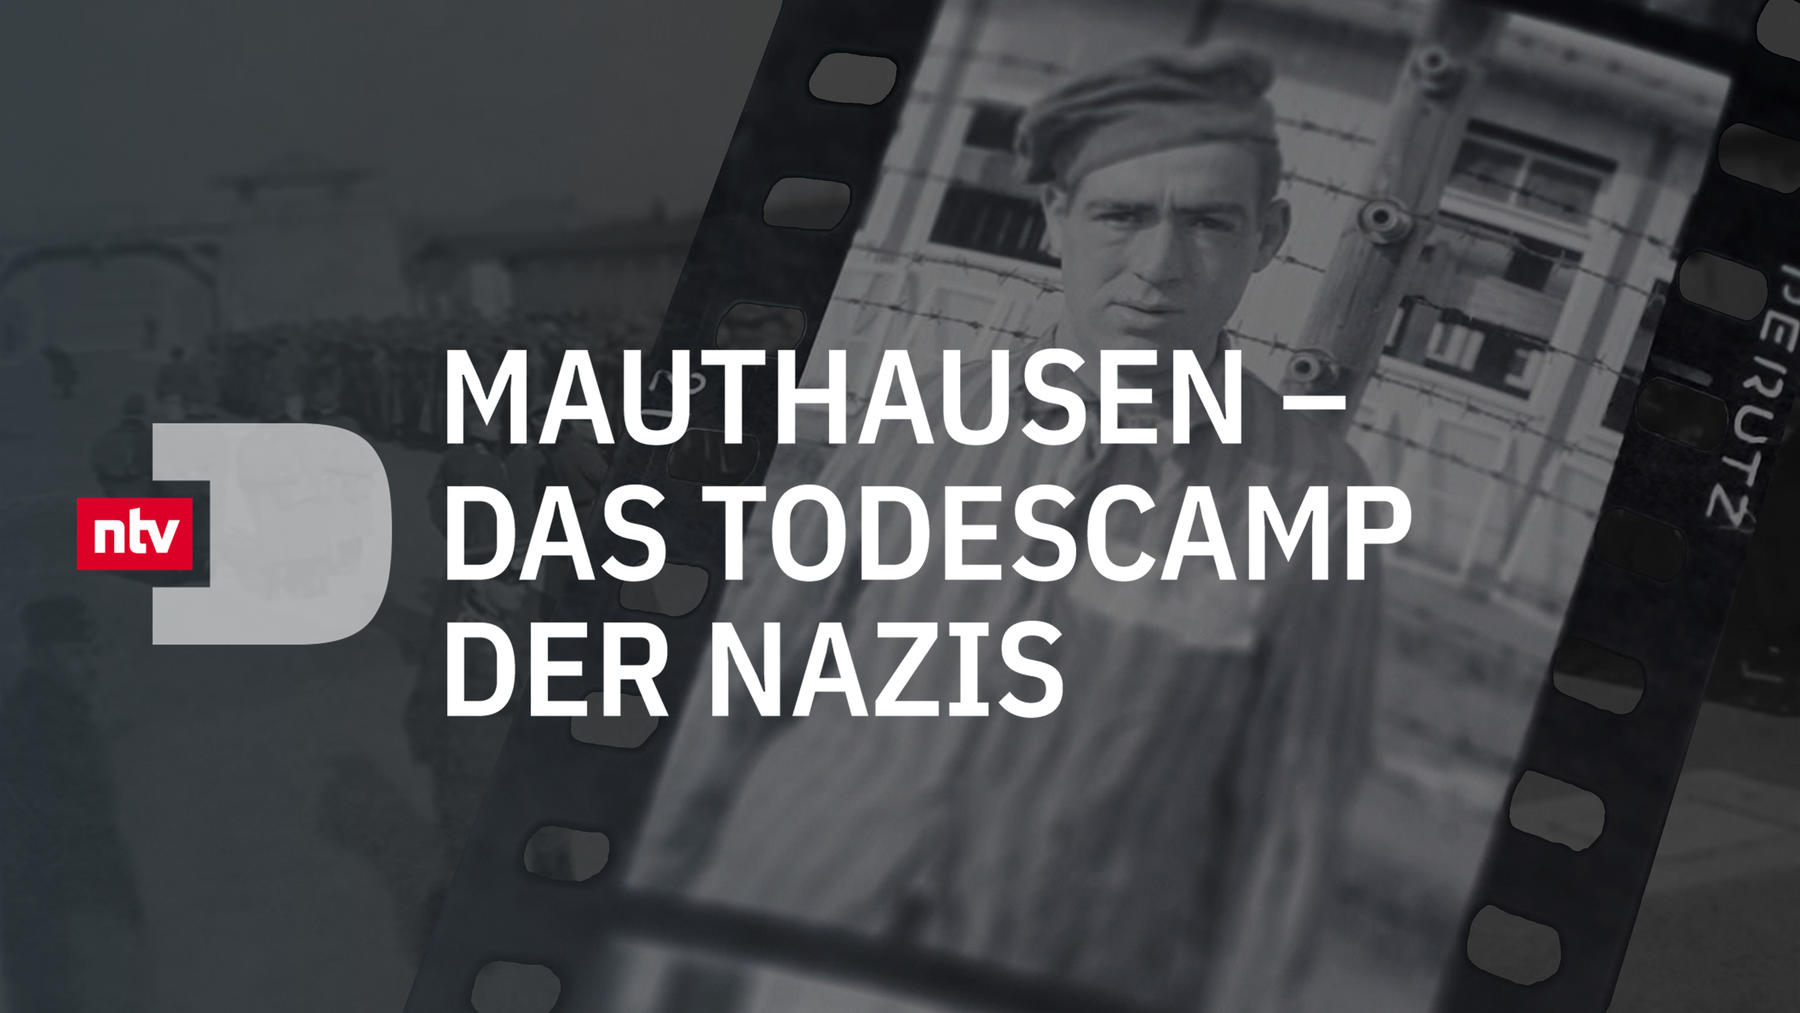 Mauthausen - Das Todescamp der Nazis